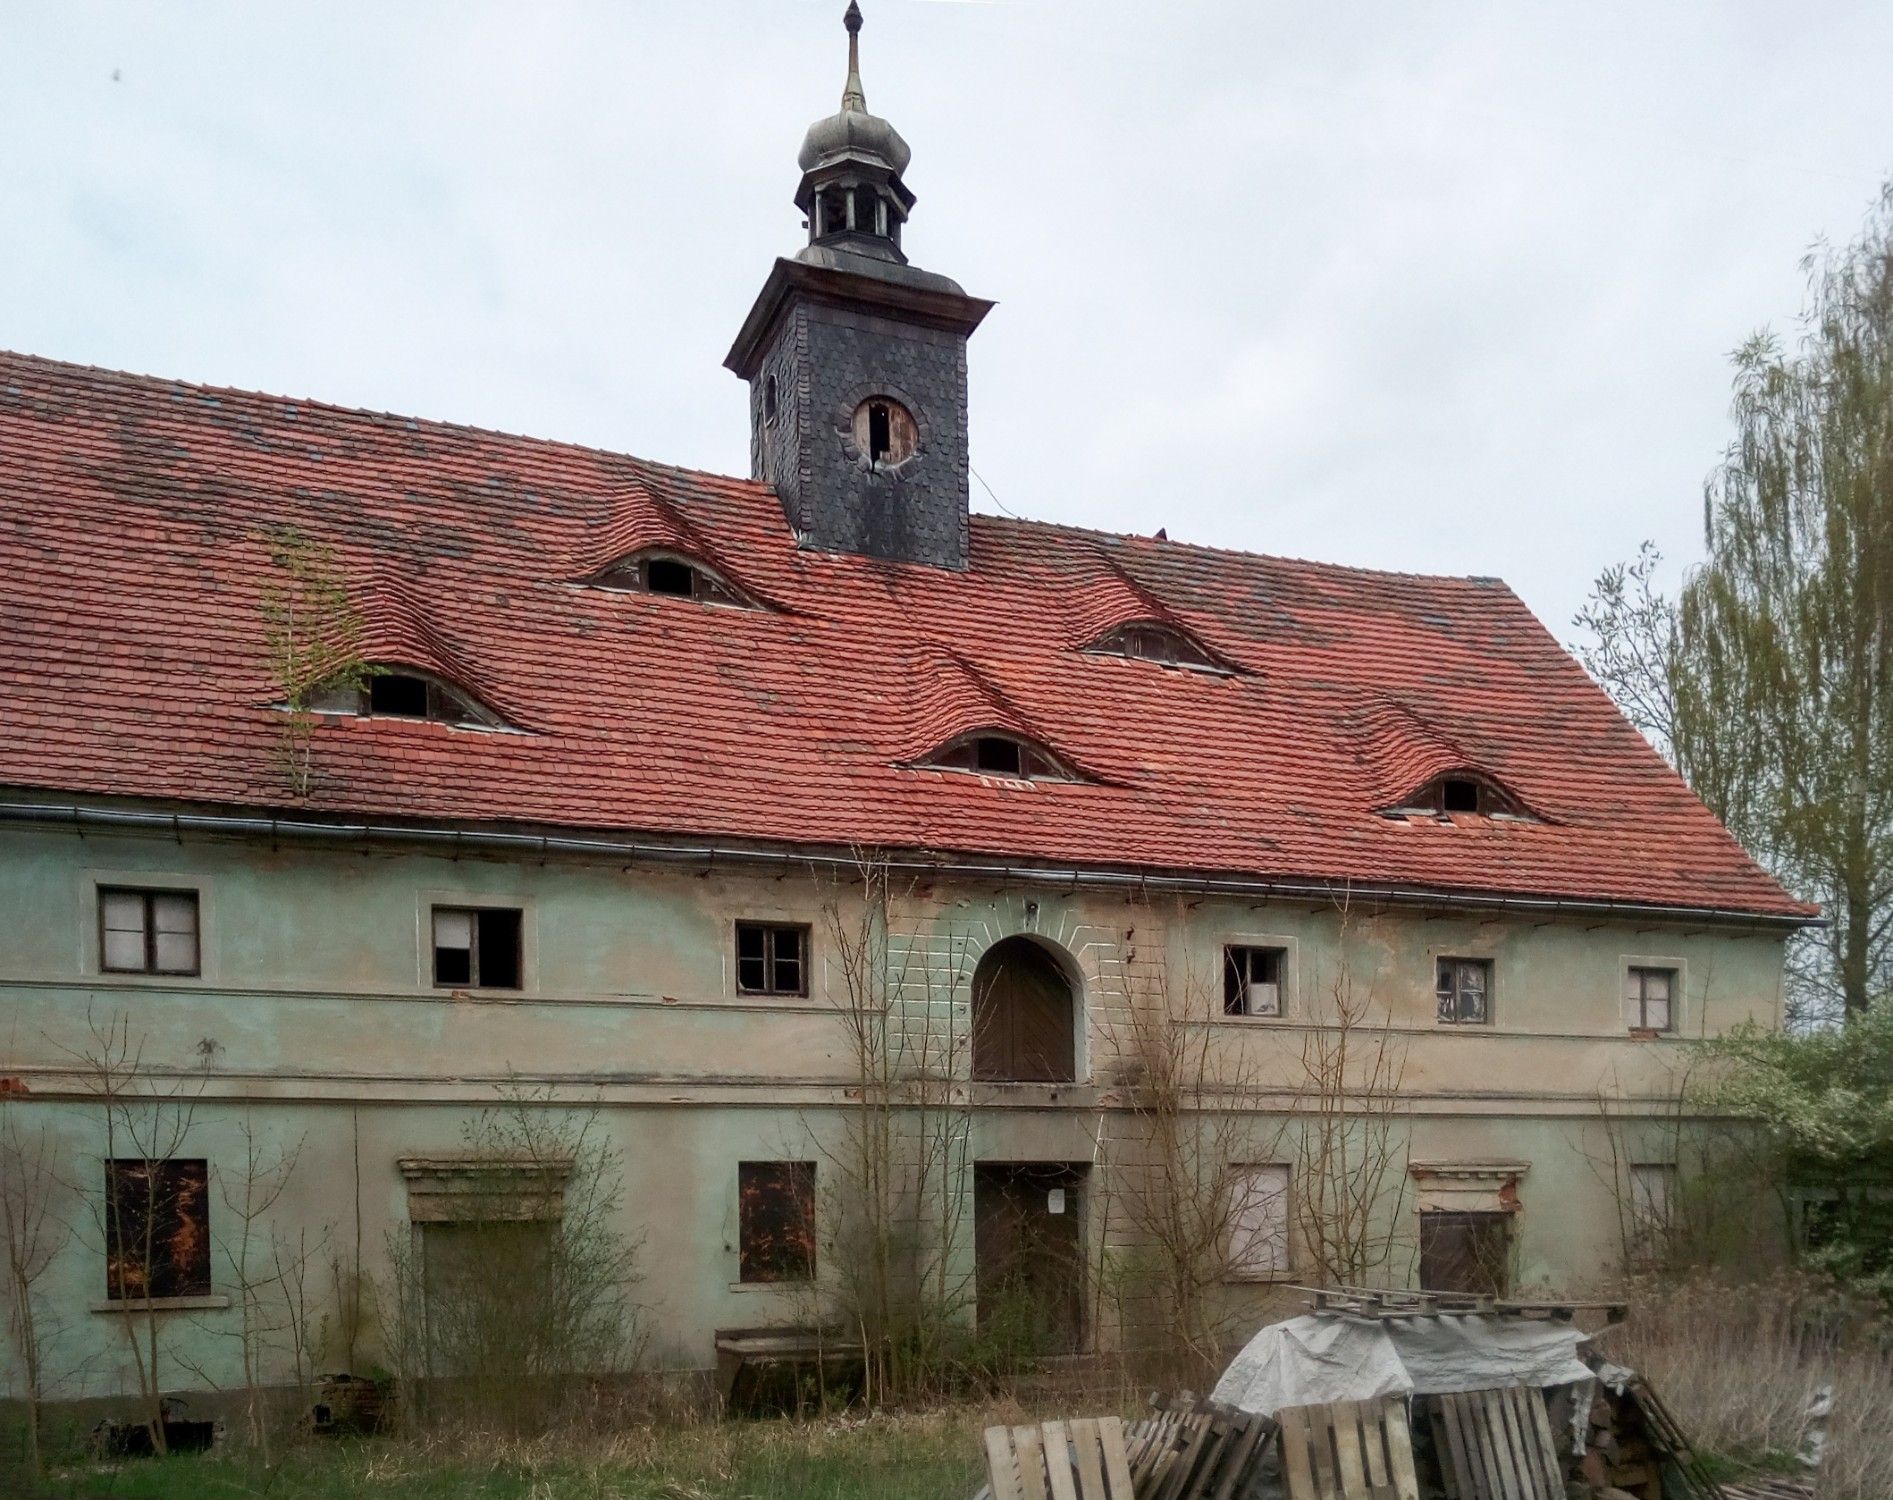 Villa padronale in vendita Namysłów, województwo opolskie, Vista esterna